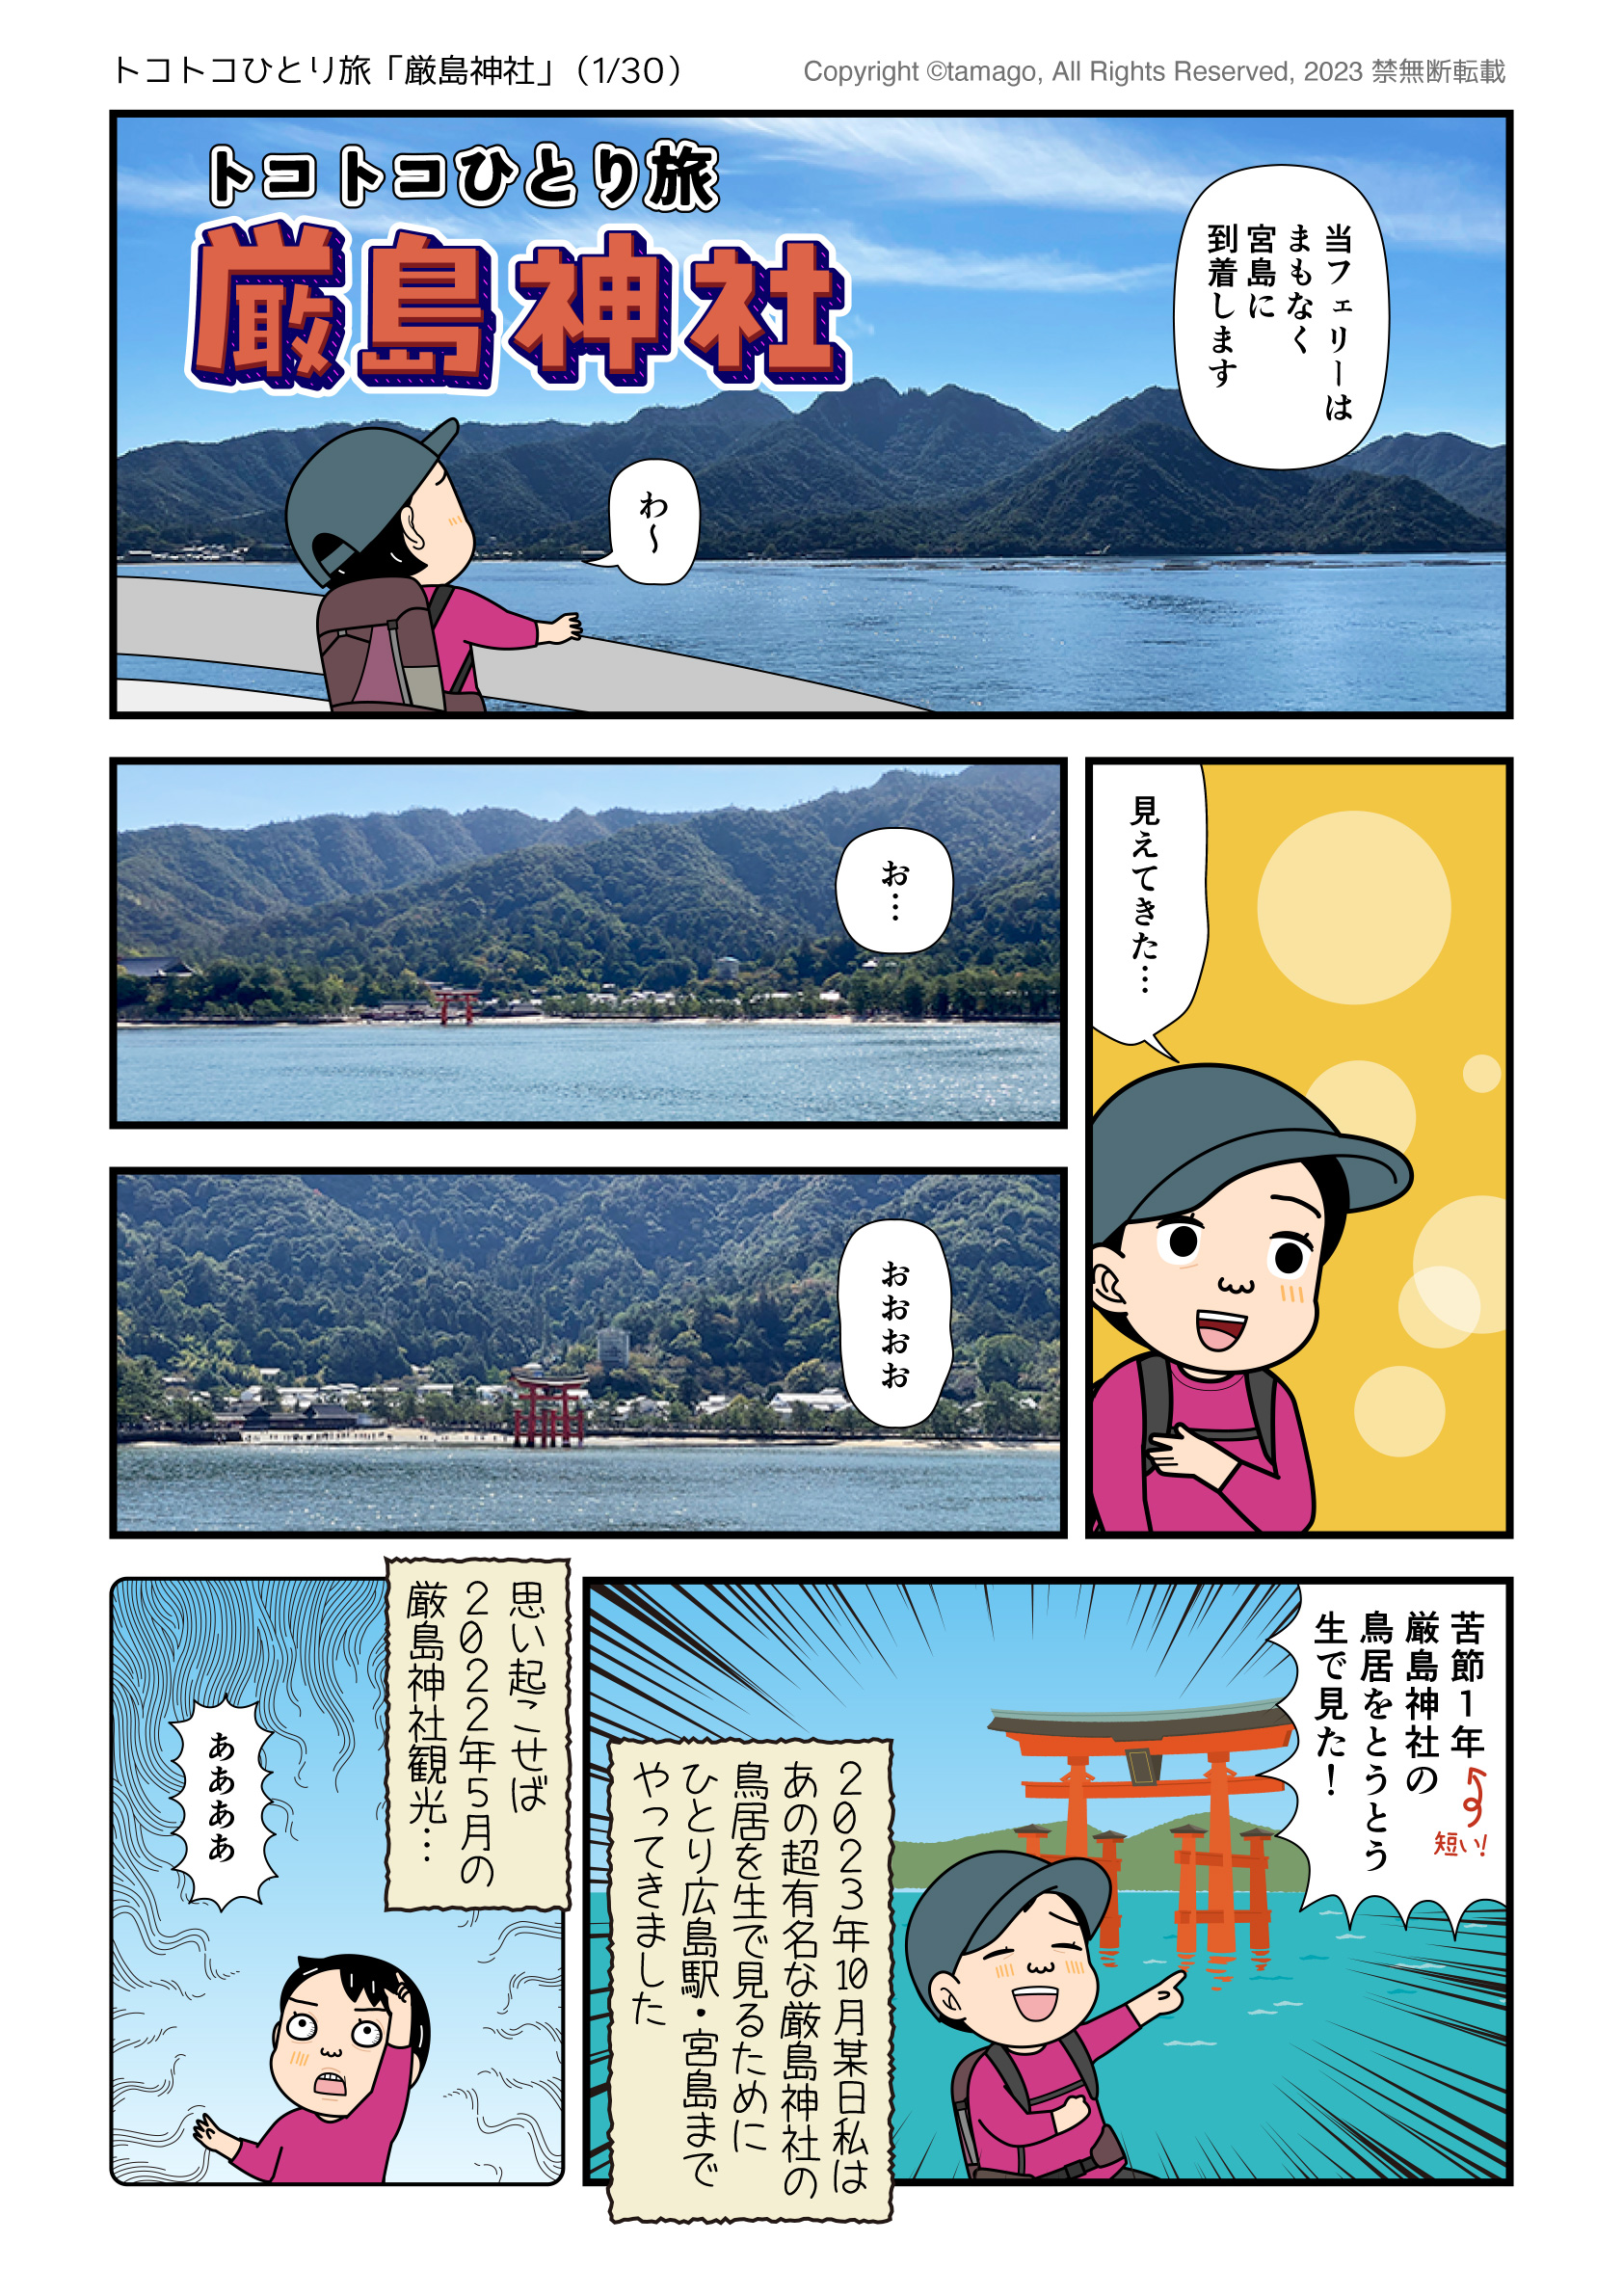 深夜バスを使って厳島神社へひとり旅に行った時のイラスト漫画レポ